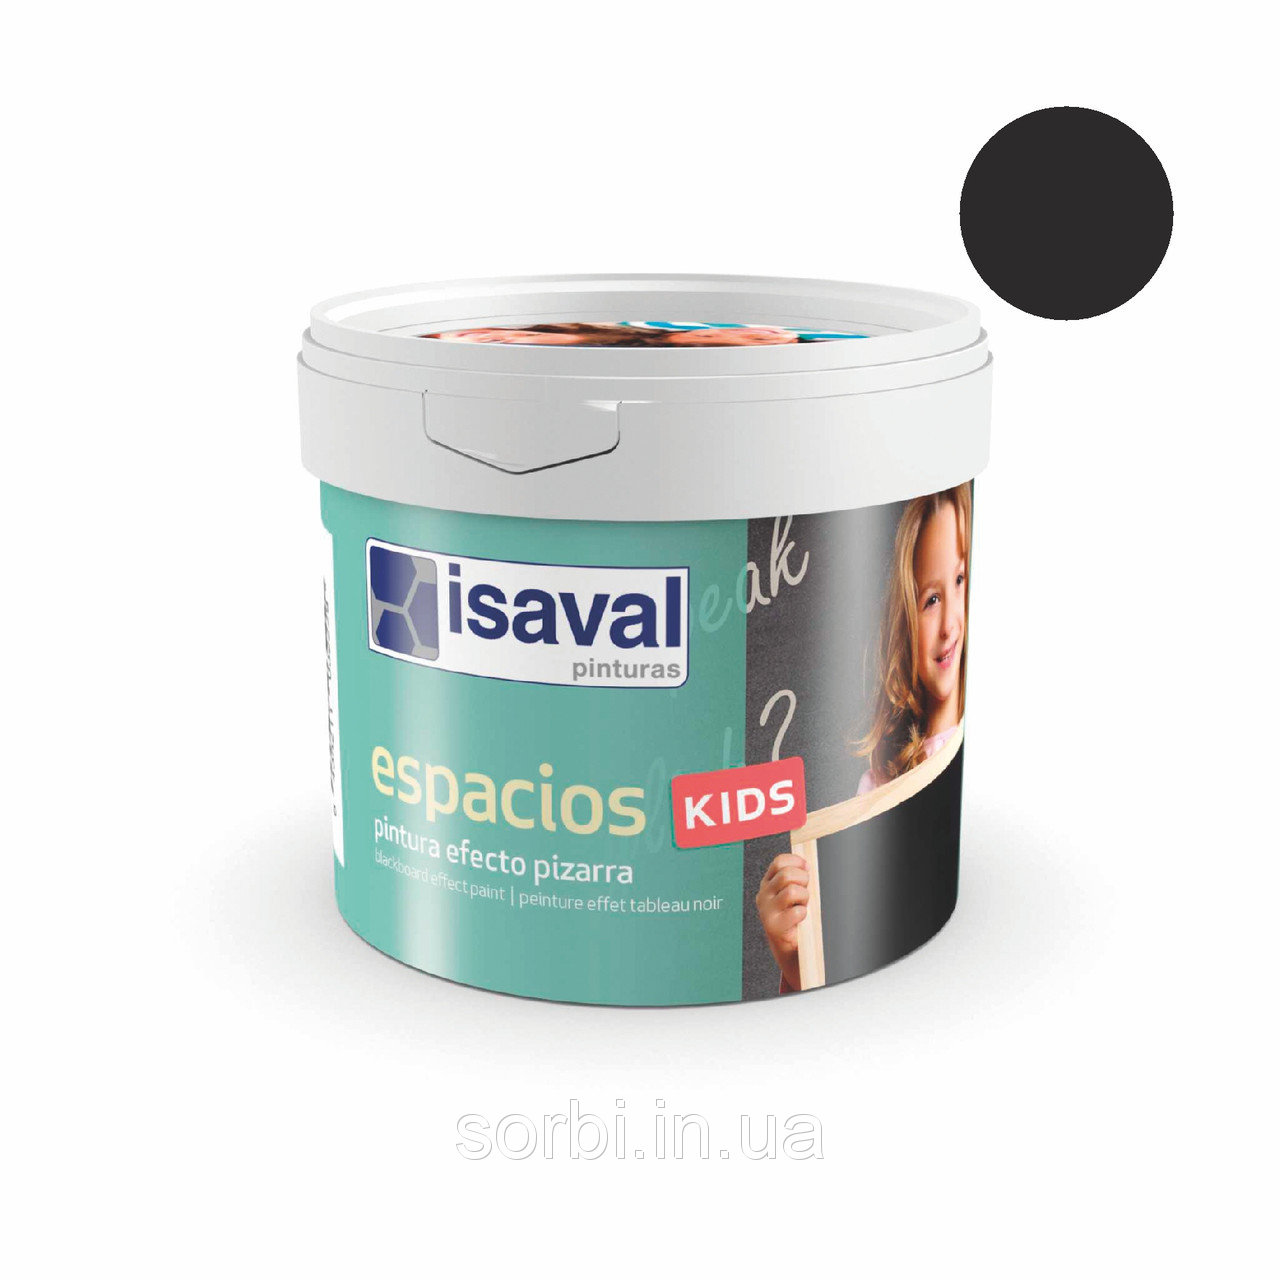 Фарба для шкільної дошки чорна - Espacios Kids 0,5л isaval